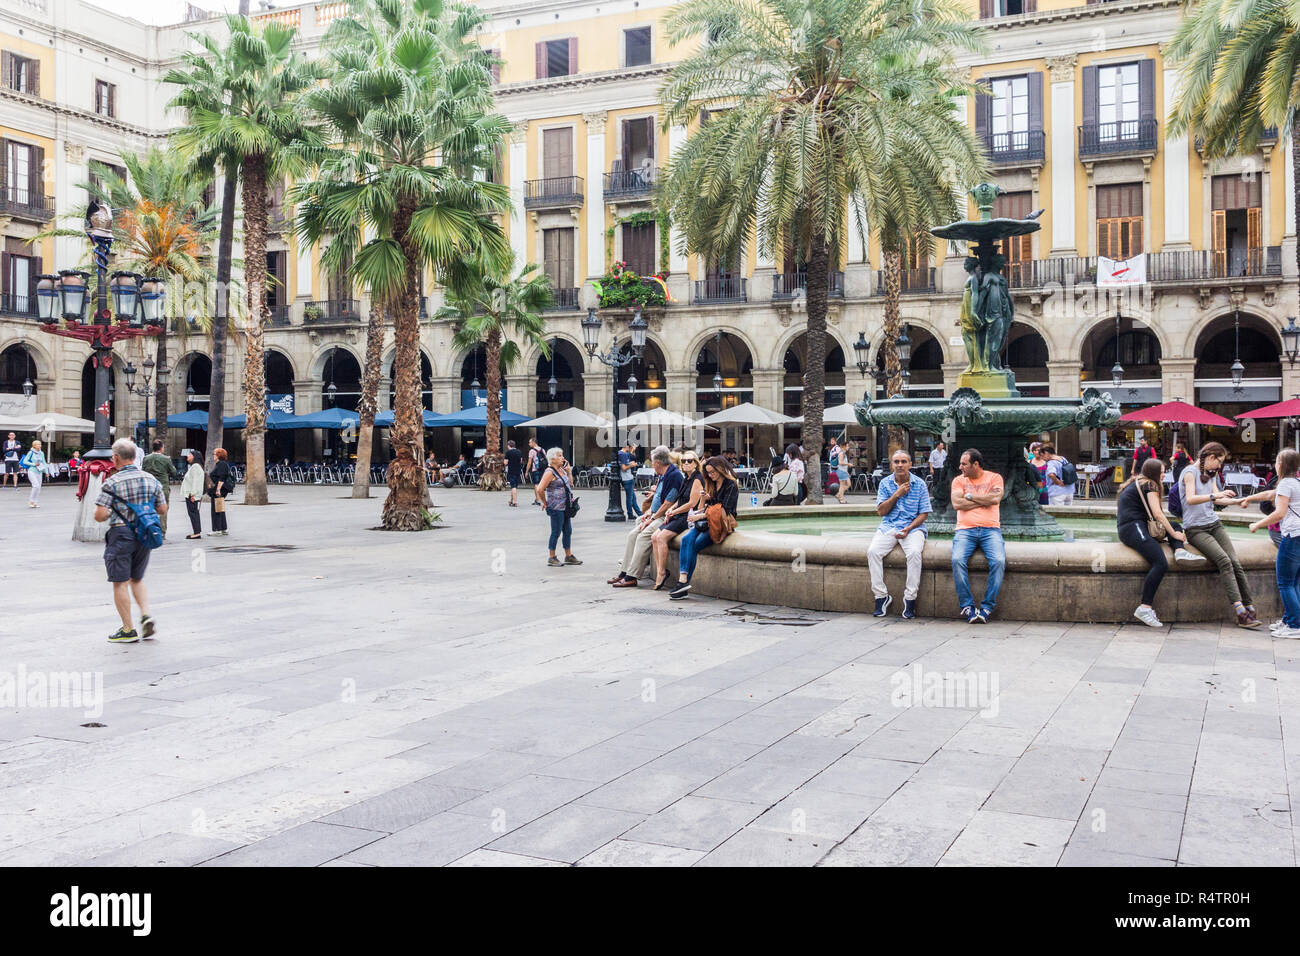 Barcelone, Espagne - 4 octobre 2017 : dans la Placa Reial juste à côté de La Rambla. La place est populaire pour les restaurants et la vie nocturne. Banque D'Images